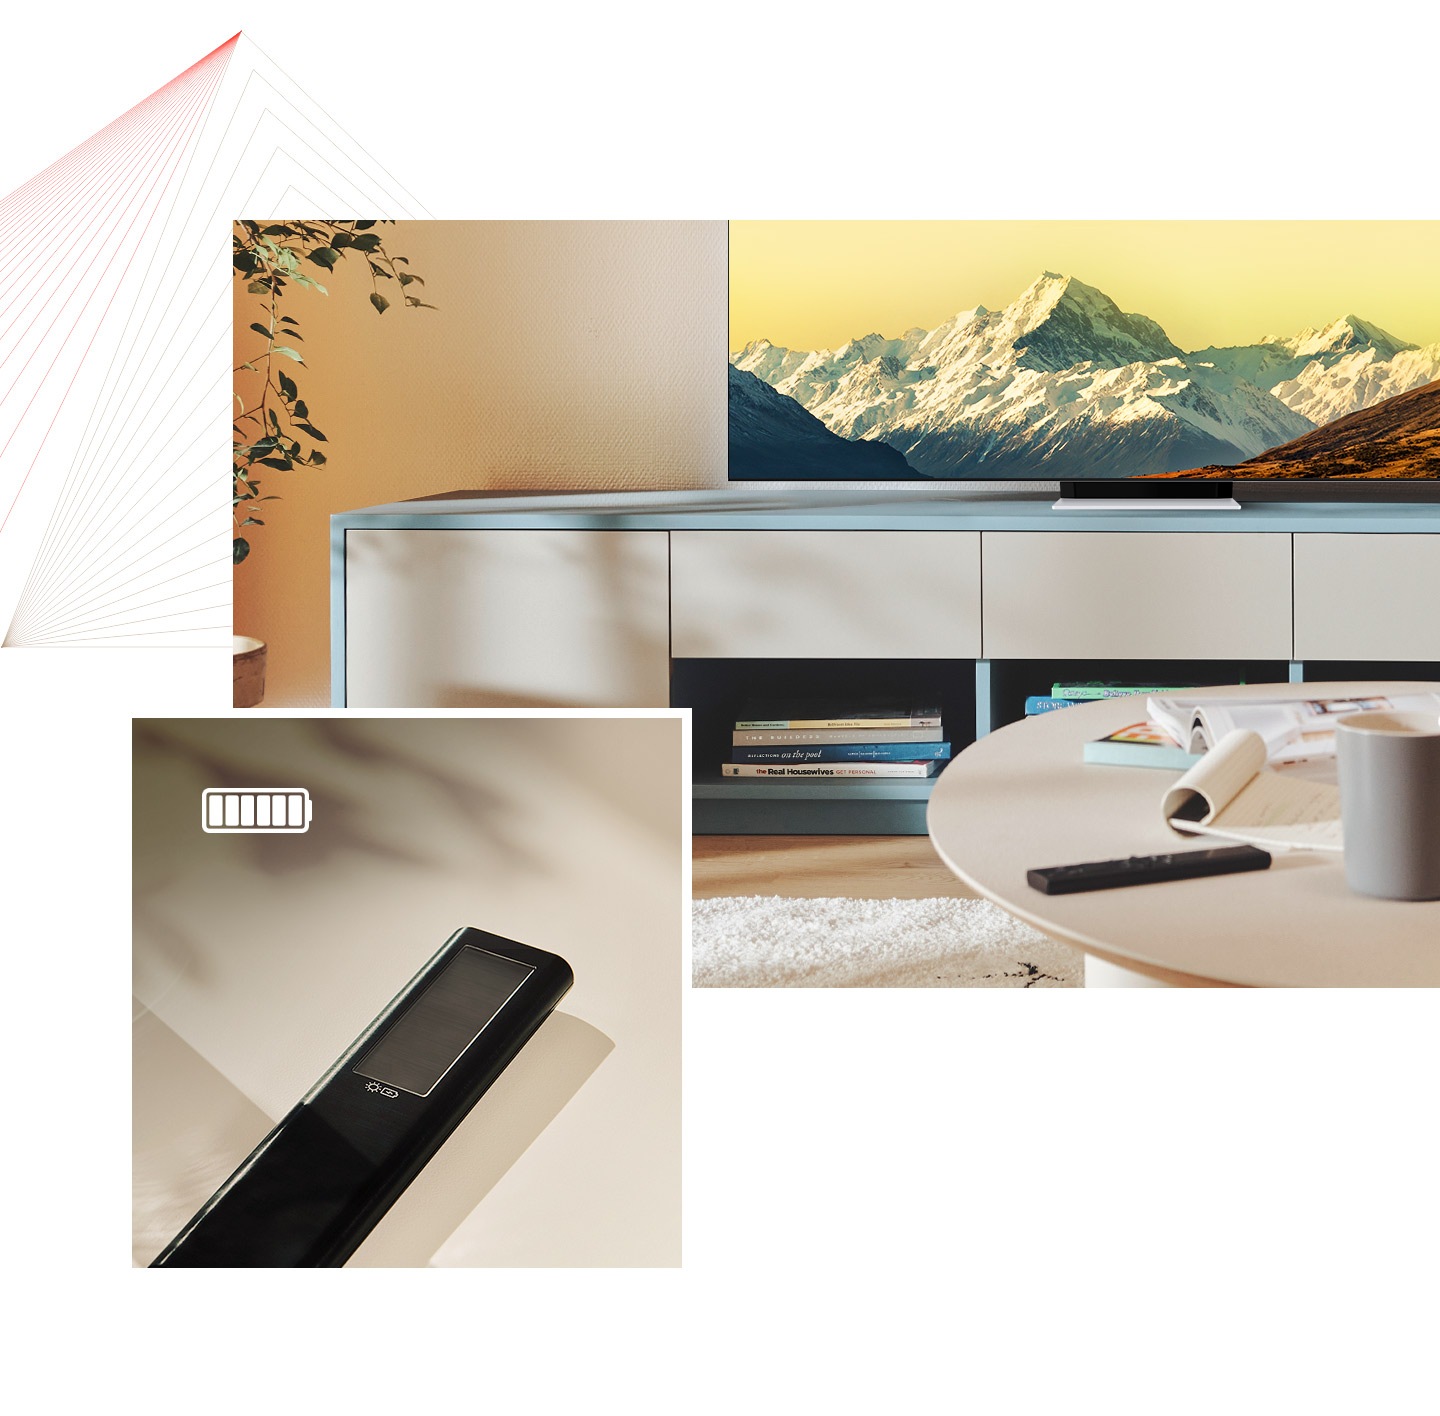 En primer lugar, el SolarCell Remote está sobre una mesa en una habitación luminosa con el Neo QLED también en pantalla. En segundo lugar, se muestra un primer plano del SolarCell Remote con un icono de batería completamente cargada.